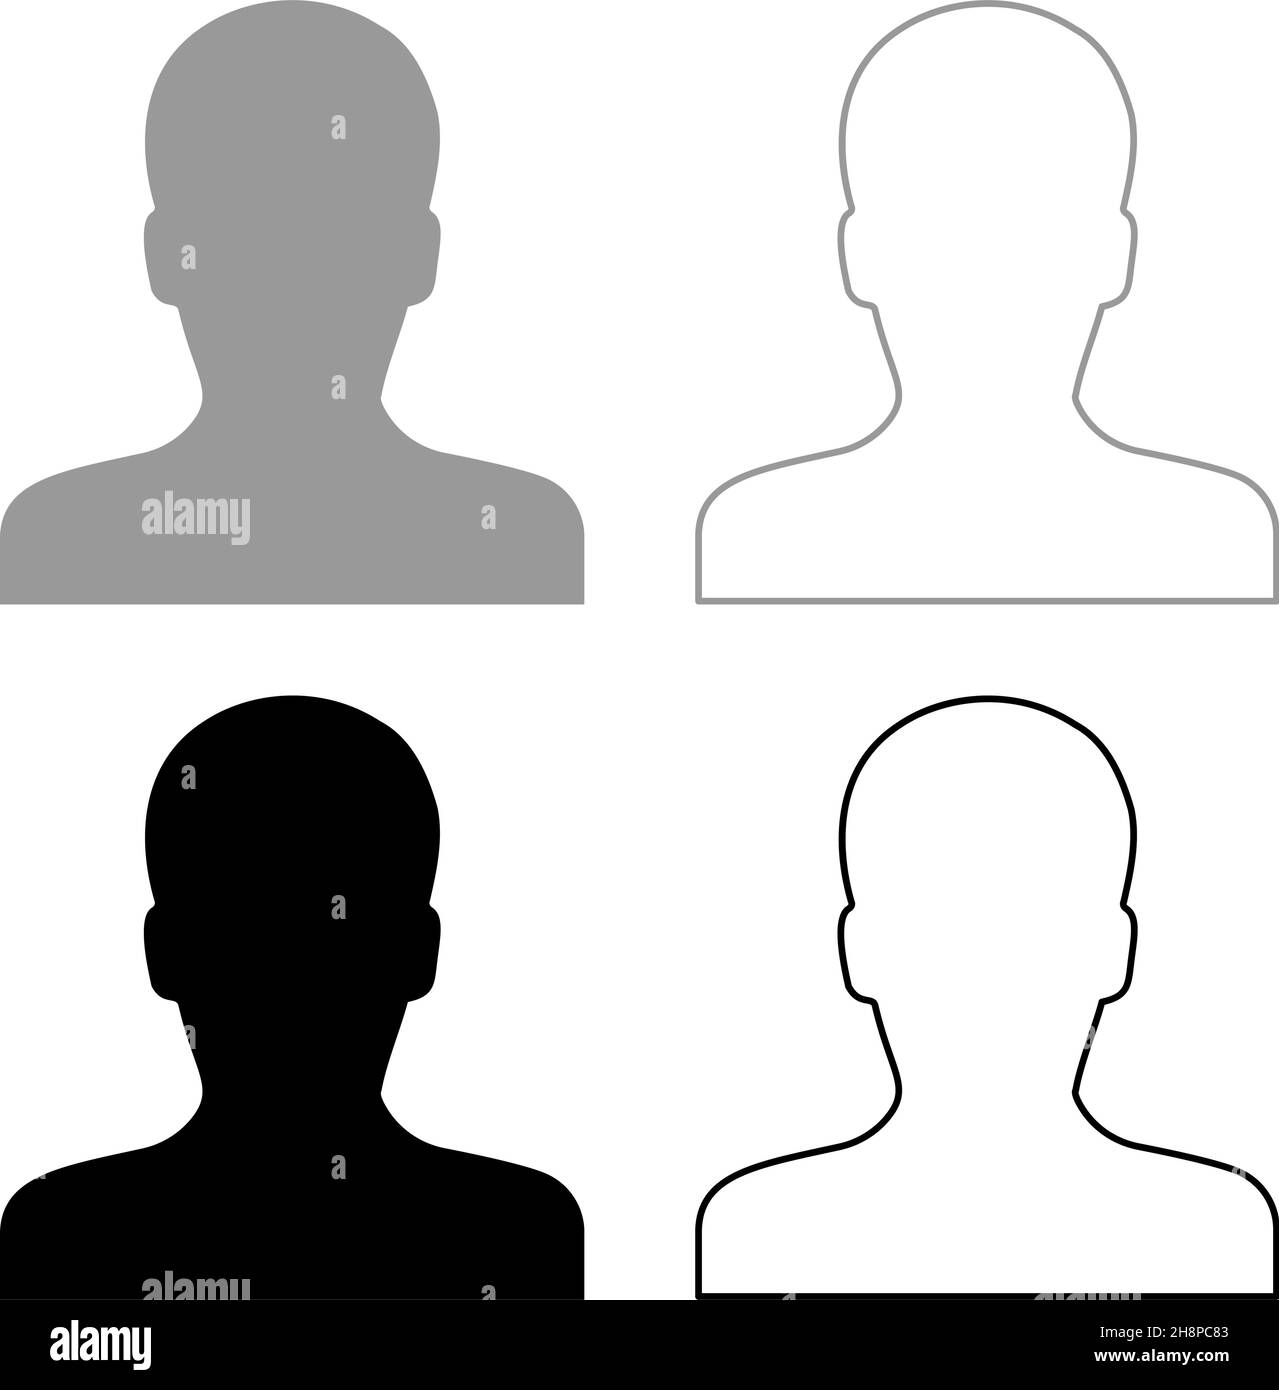 Avatar Mann Gesicht Silhouette Benutzer Zeichen Person Profil Bild männlich set Symbol grau schwarz Farbe Vektor Illustration Bild einfach flachen Stil solide füllen Stock Vektor